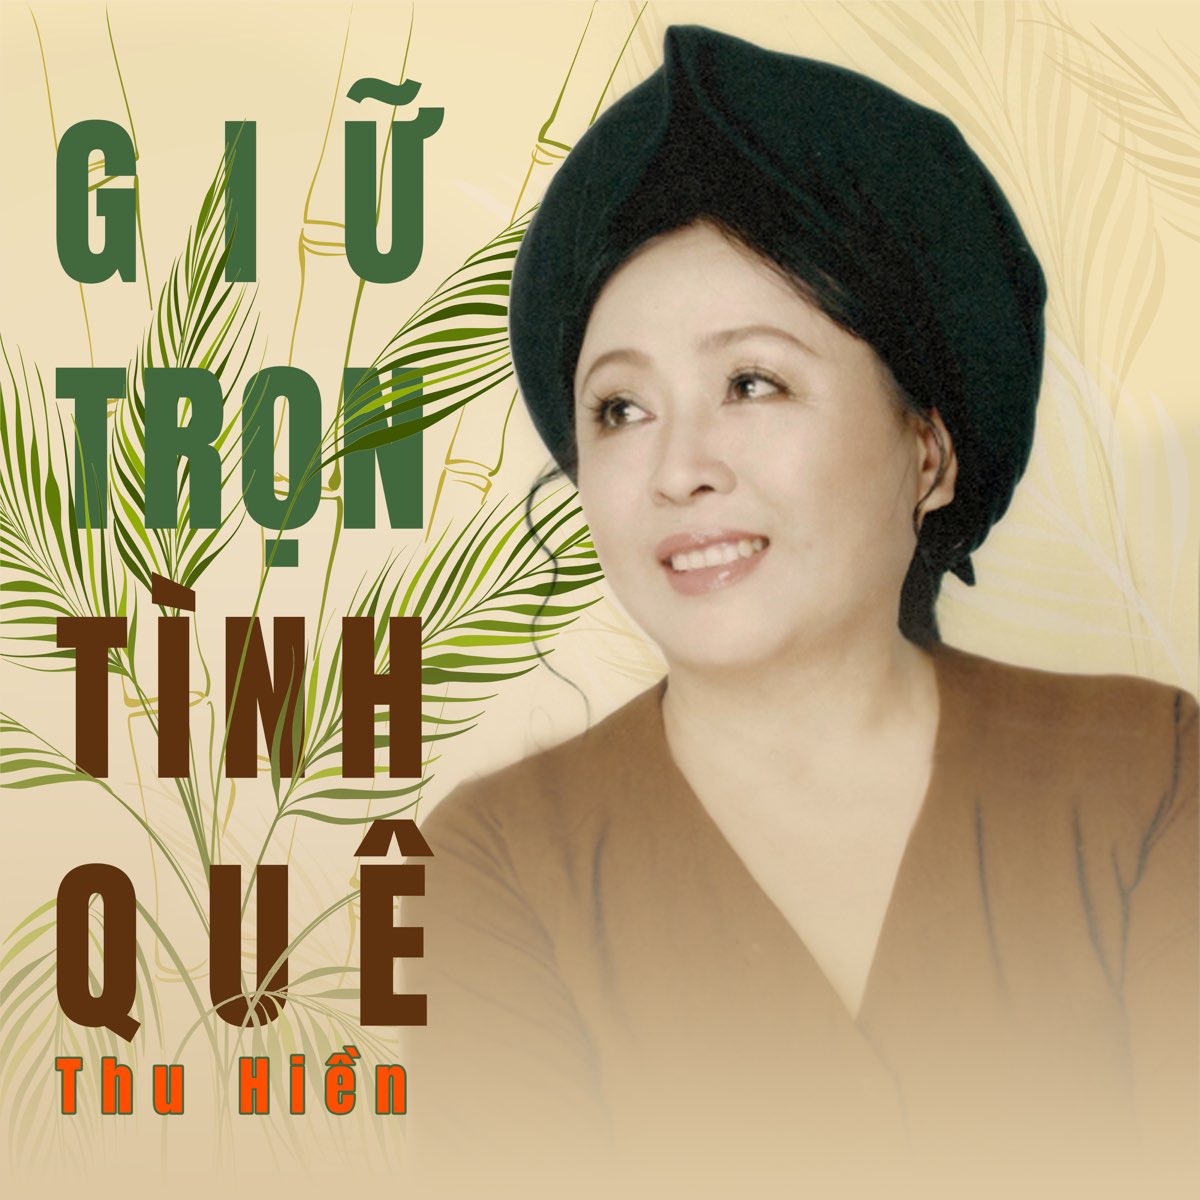 ‎Giữ Trọn Tình Quê - Album by Thu Hien - Apple Music